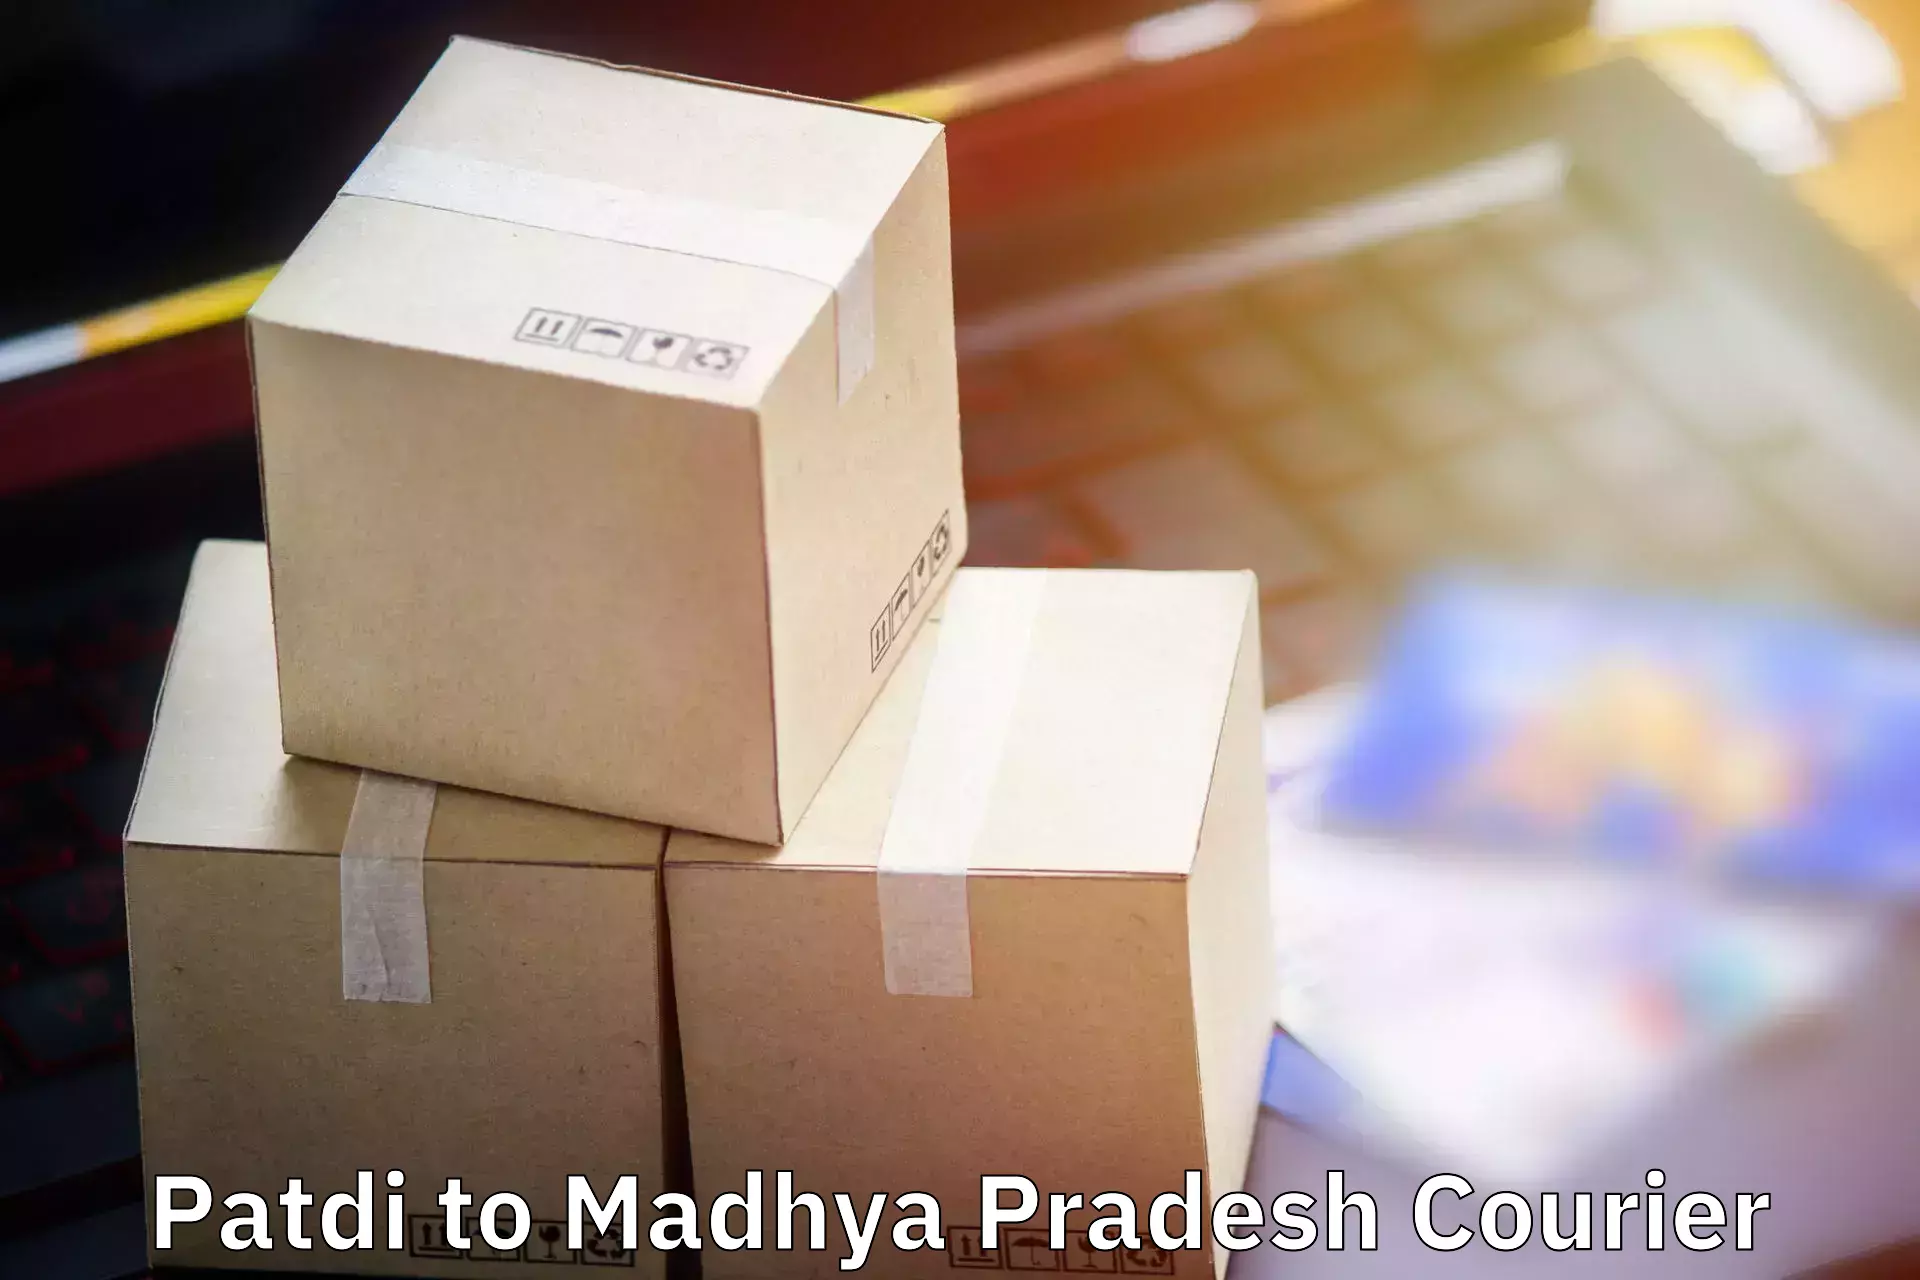 Customized luggage delivery Patdi to Maheshwar